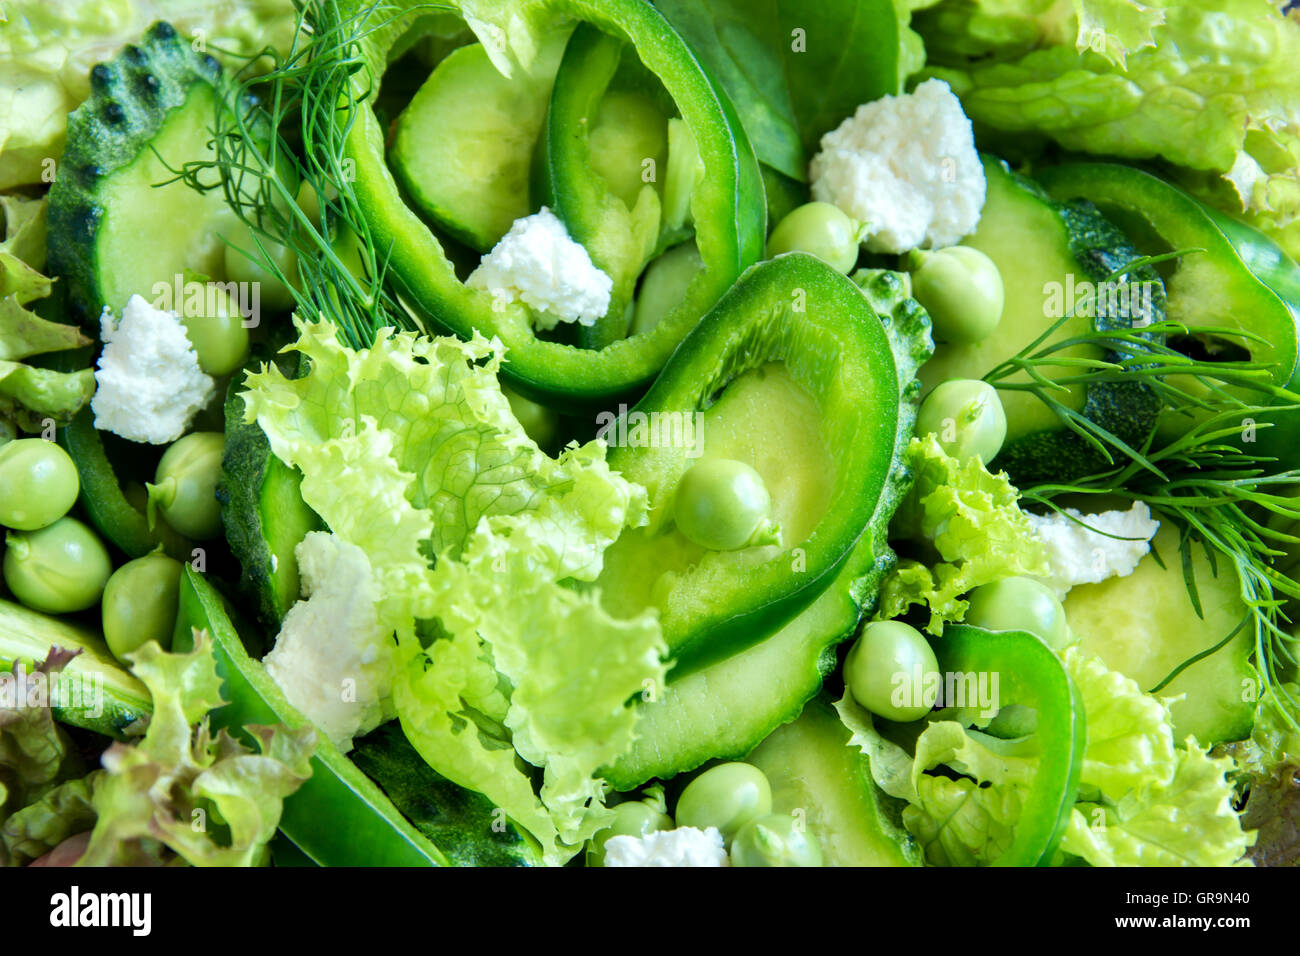 Organico verde mista insalata di verdure con formaggio feta close up Foto Stock